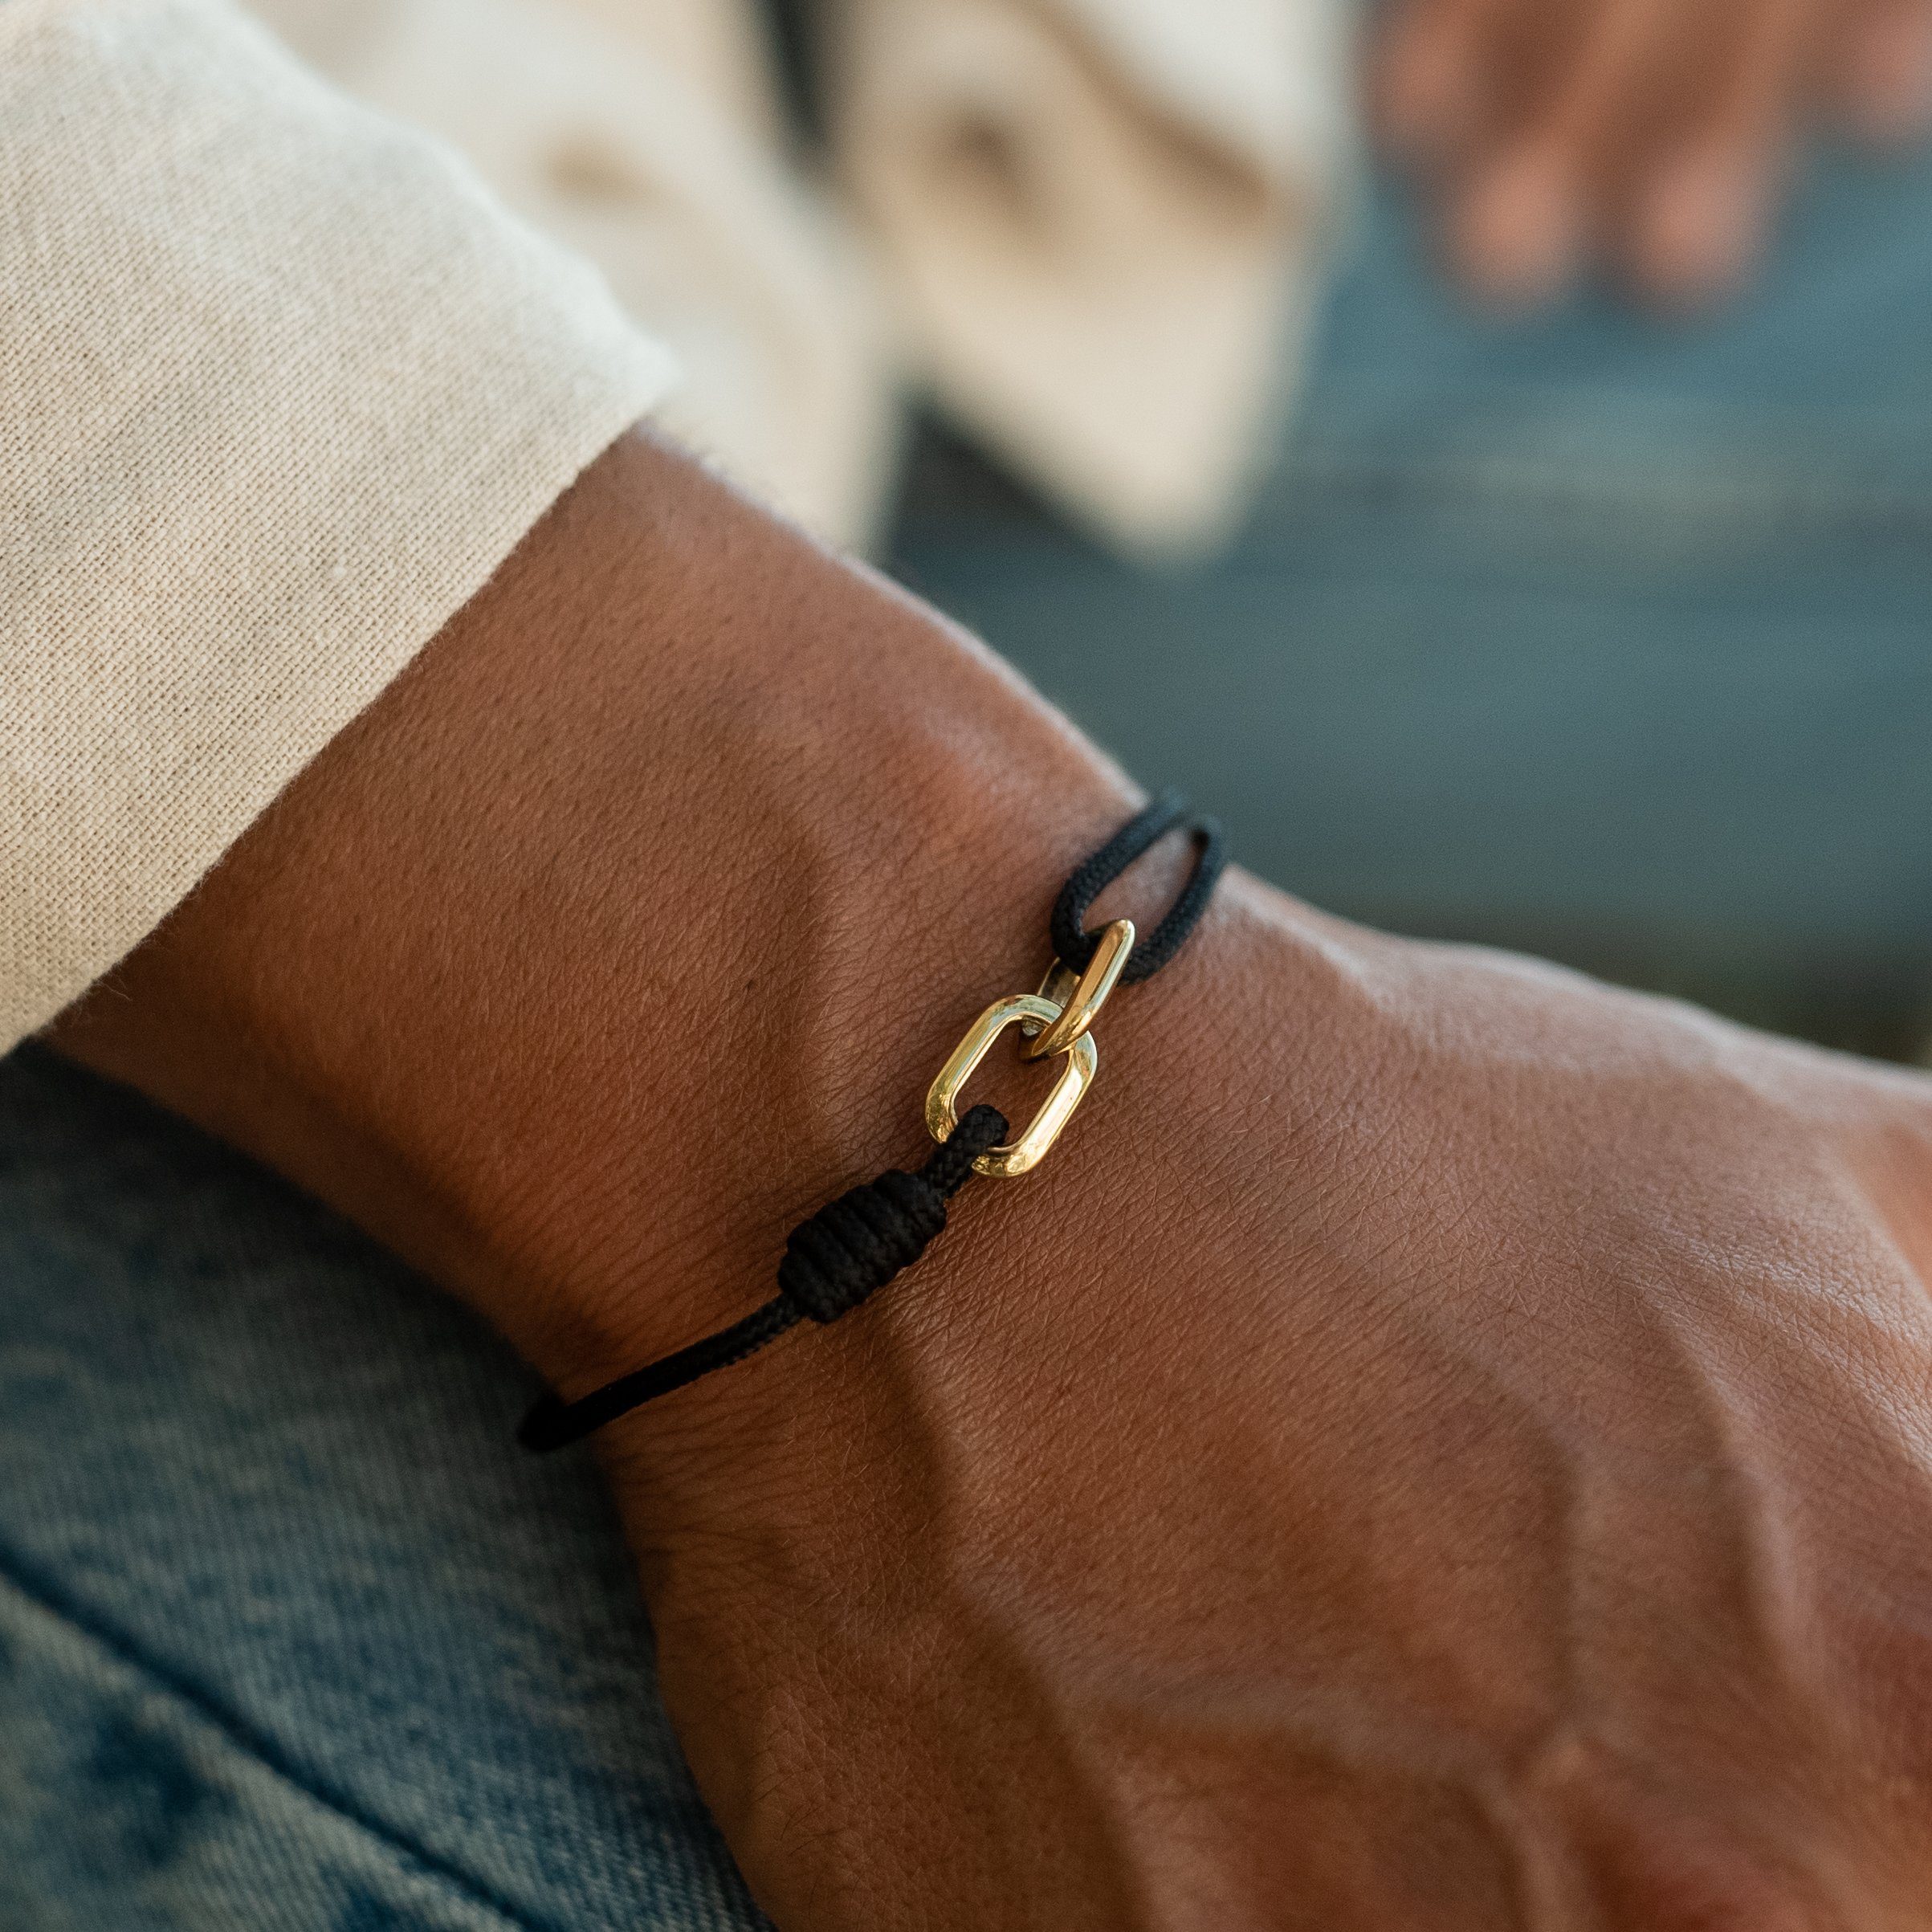 Made by Nami Armband Wasserfest Schwarz Handgemacht, Armband Gold Surfer Herren Verstellbar Armband Segeltau Armband Minimalistisches Armband Damen